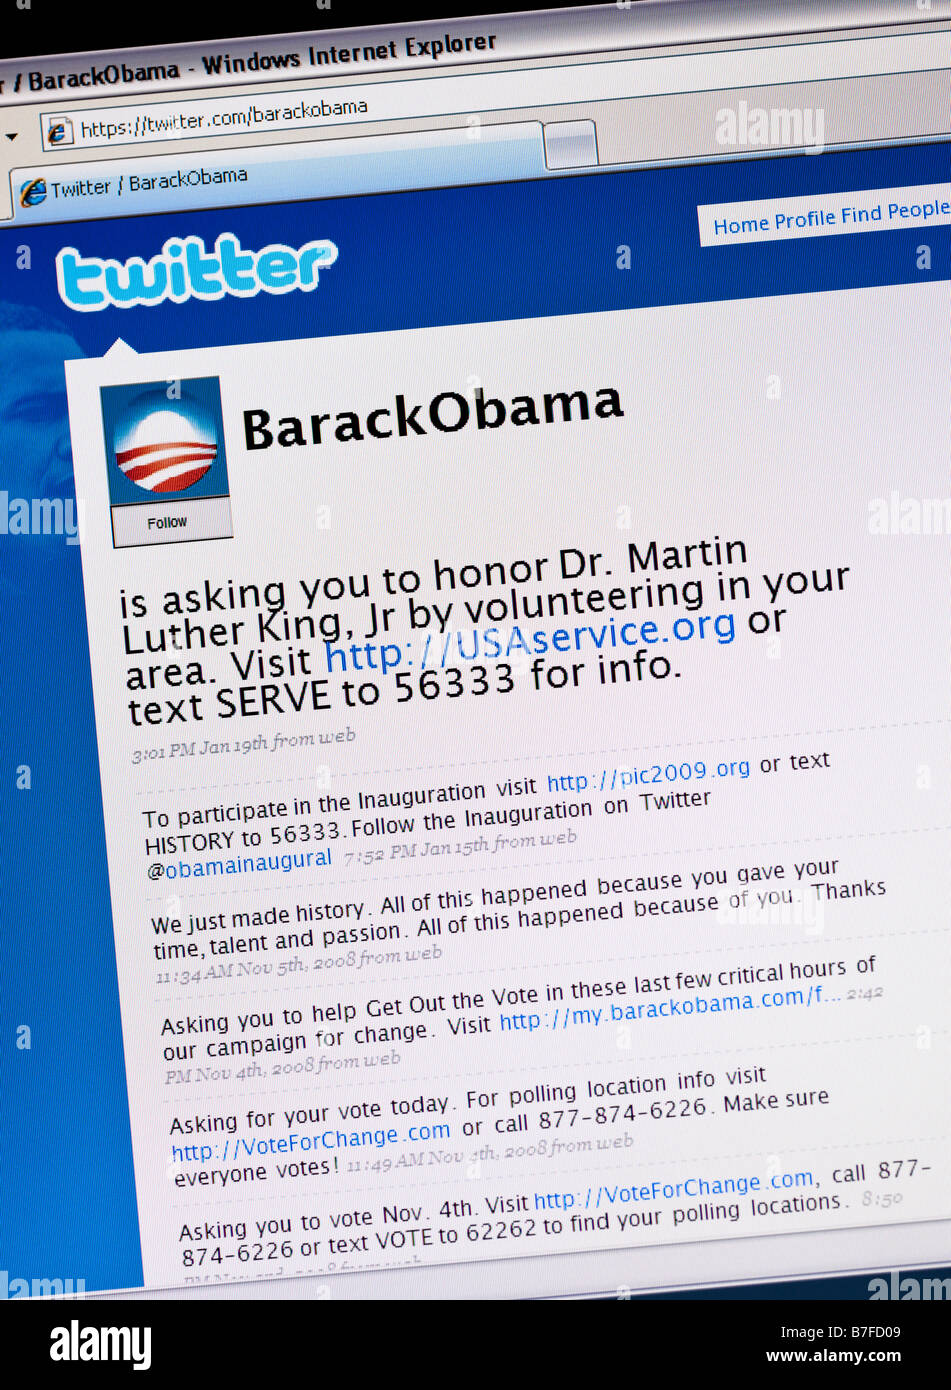 Sitio de red social Twitter Barack Obama twitter página mostrando "tweets" utilizado para proselitismo político durante su carrera a Presidente de los EE.UU. Foto de stock